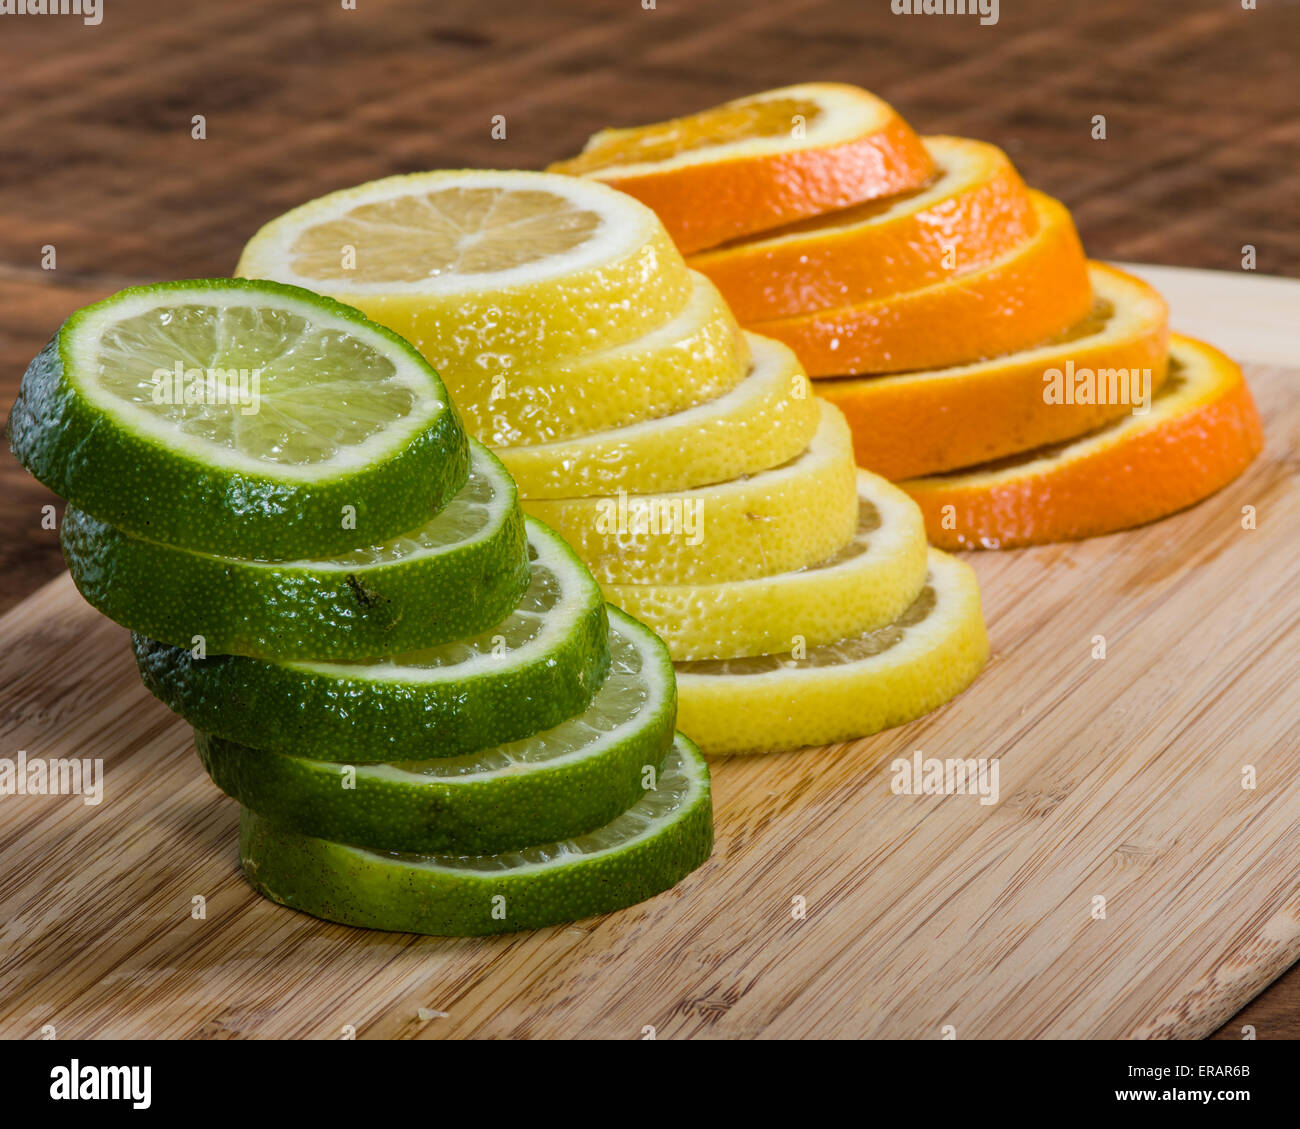 Stapel von Zitrone, Limette und Orange Scheiben auf Schneidebrett Stockfoto